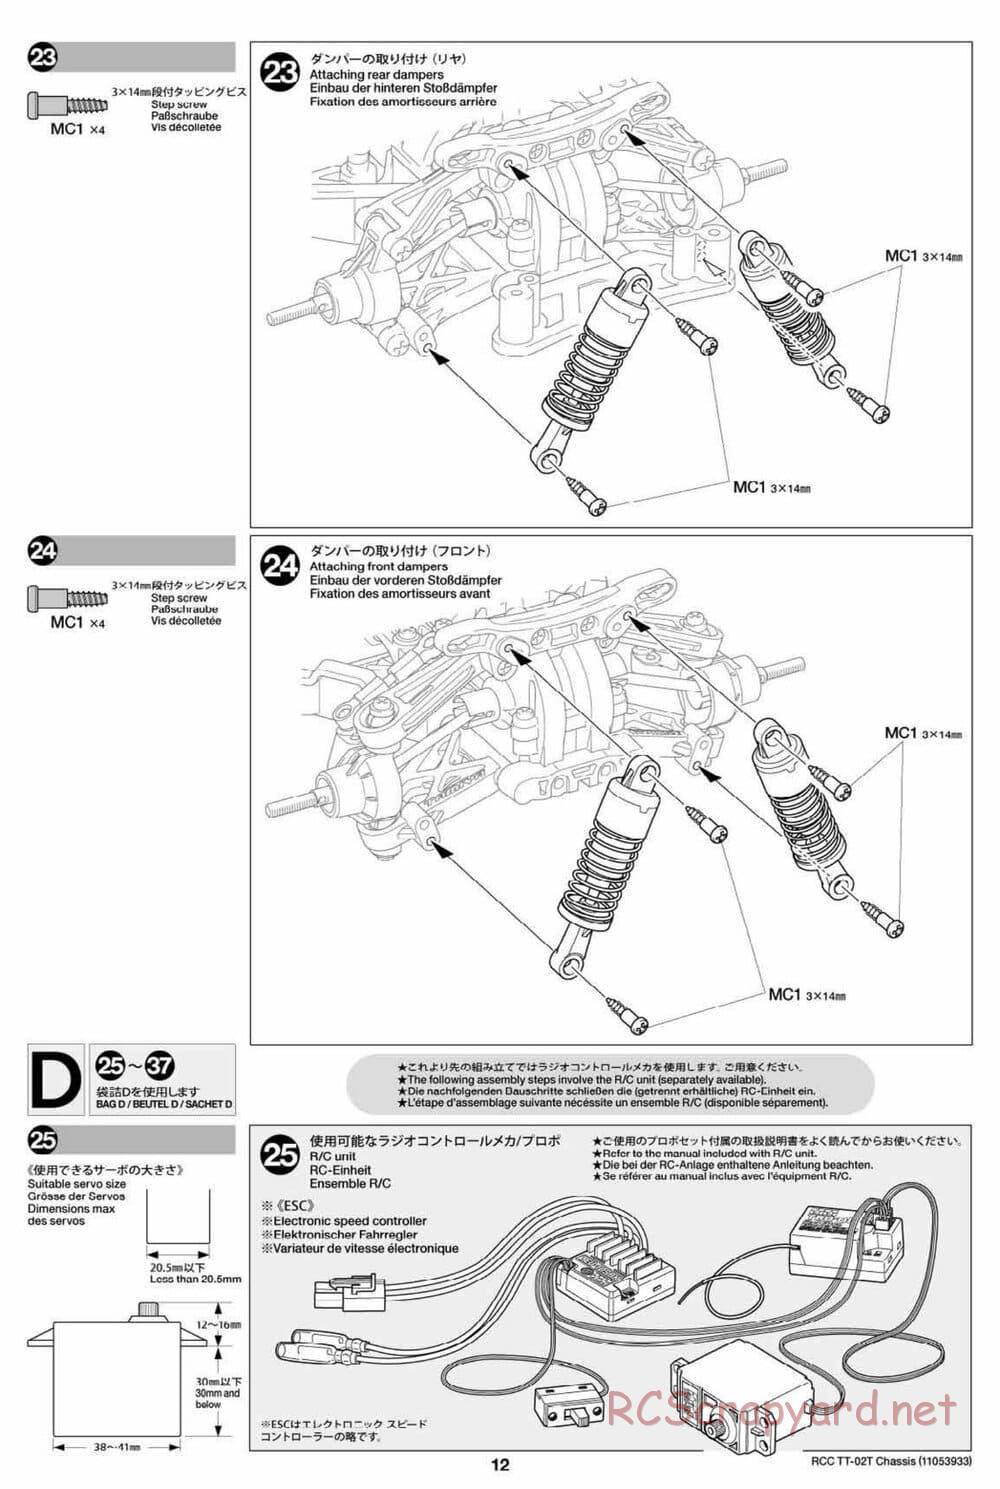 Tamiya - TT-02T Chassis - Manual - Page 13